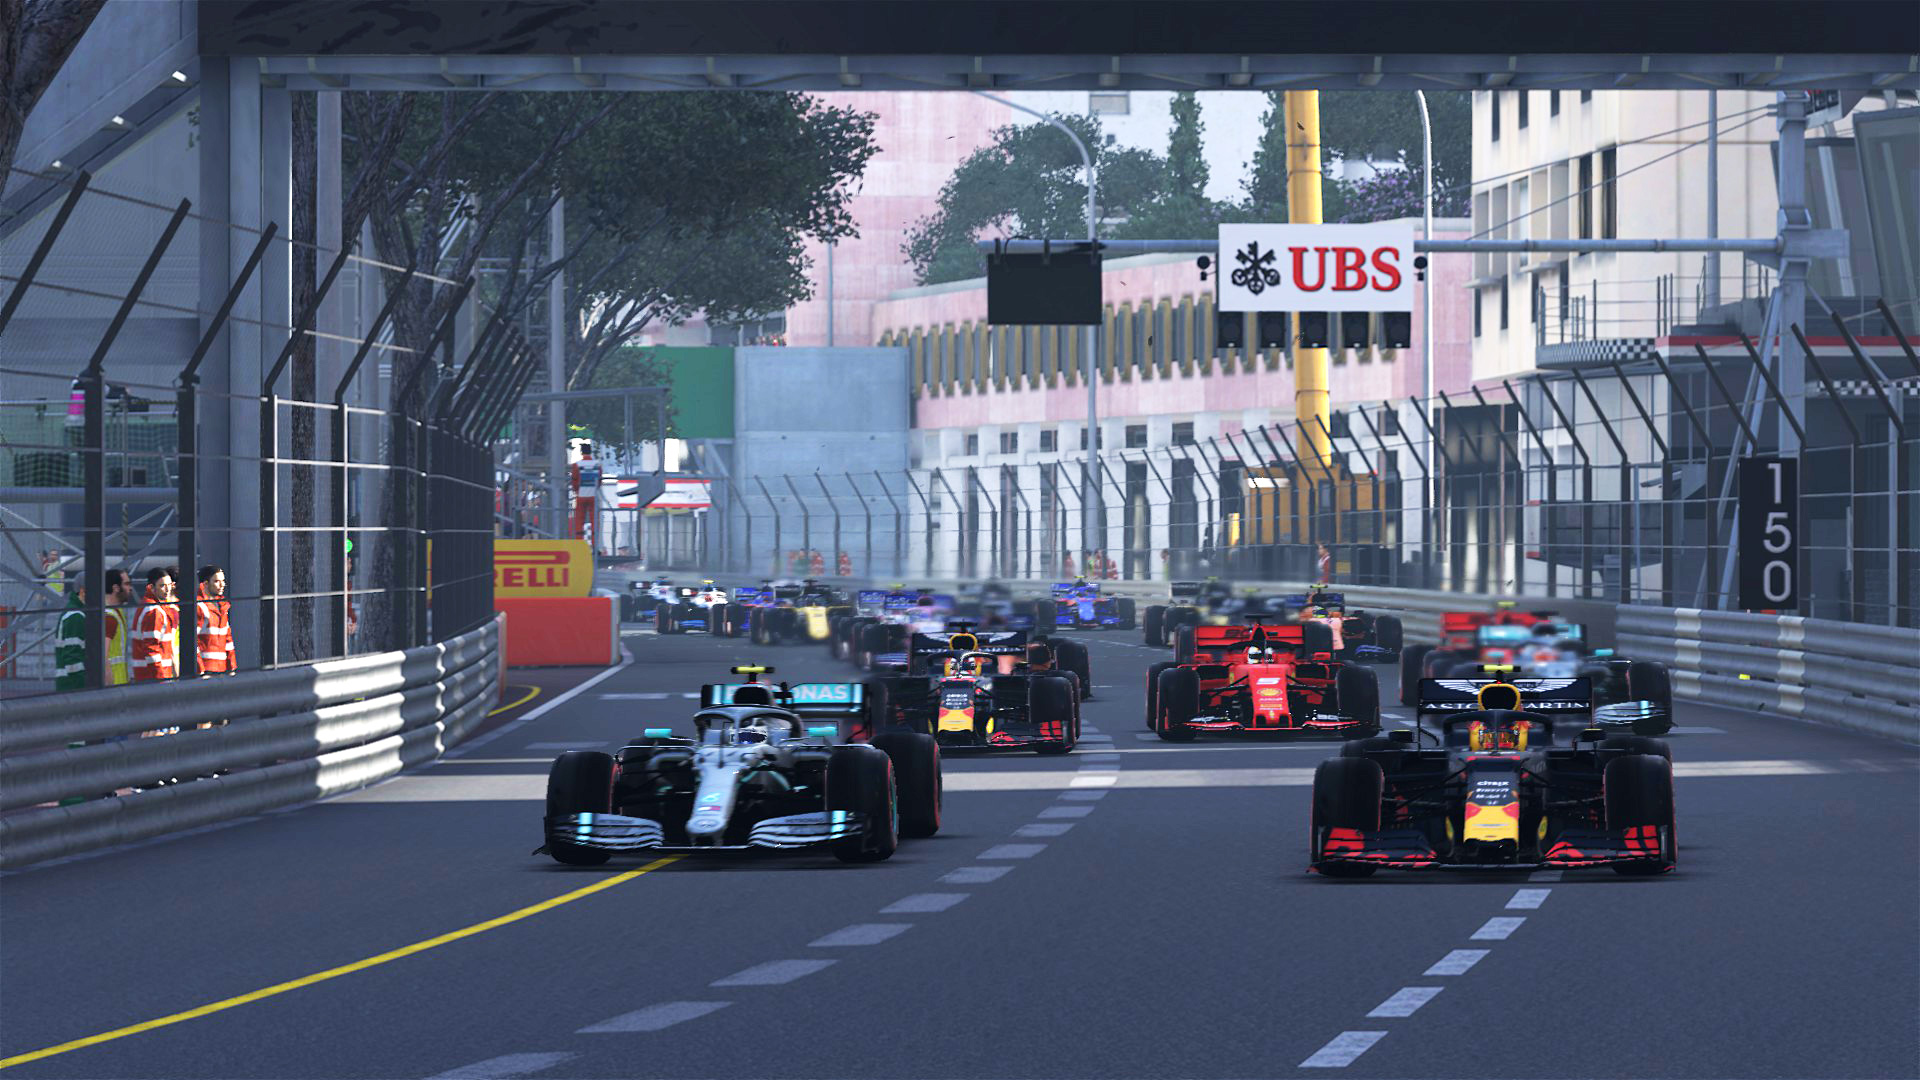 2020 Virtual Monaco Grand Prix